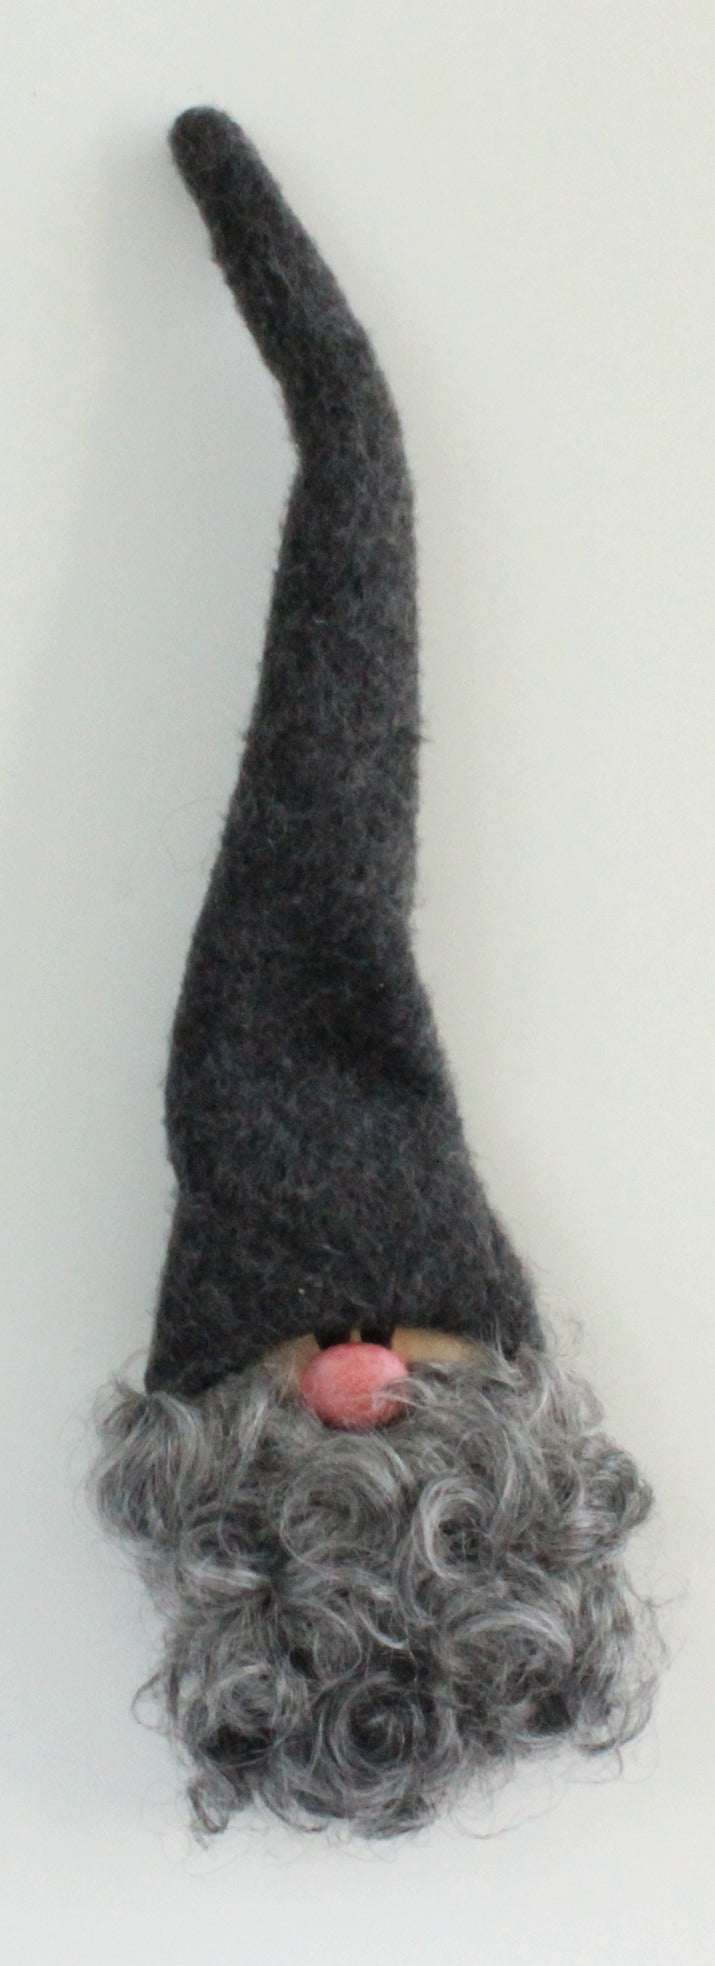 Handmade Santa, magnet, grey cap, grey curly beard